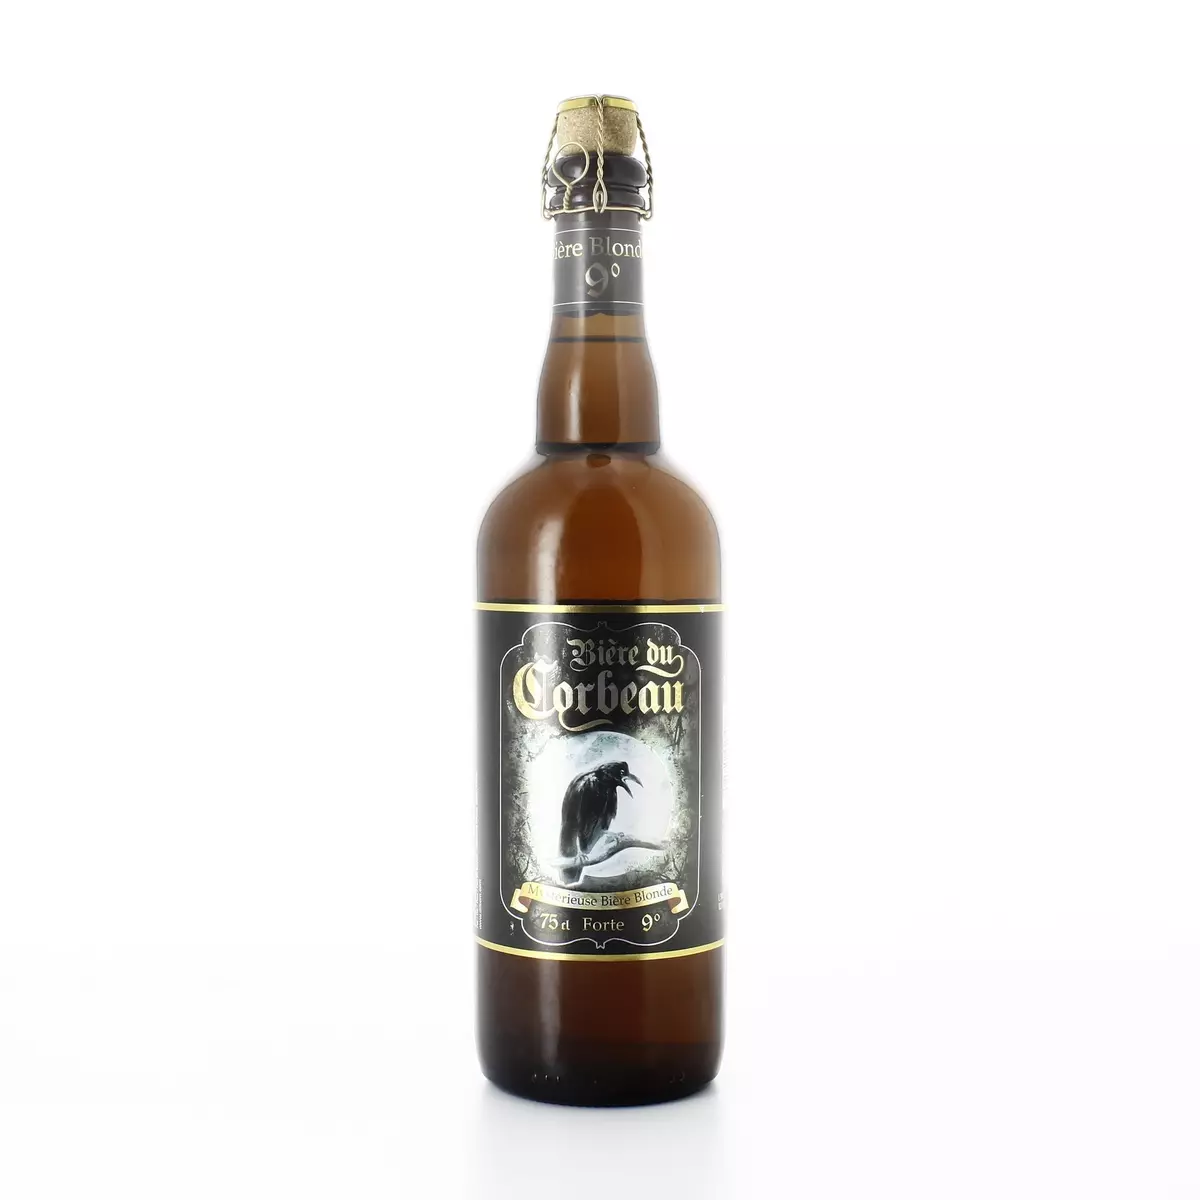 BIERE DU CORBEAU Bière blonde forte 9% bouteille 75cl